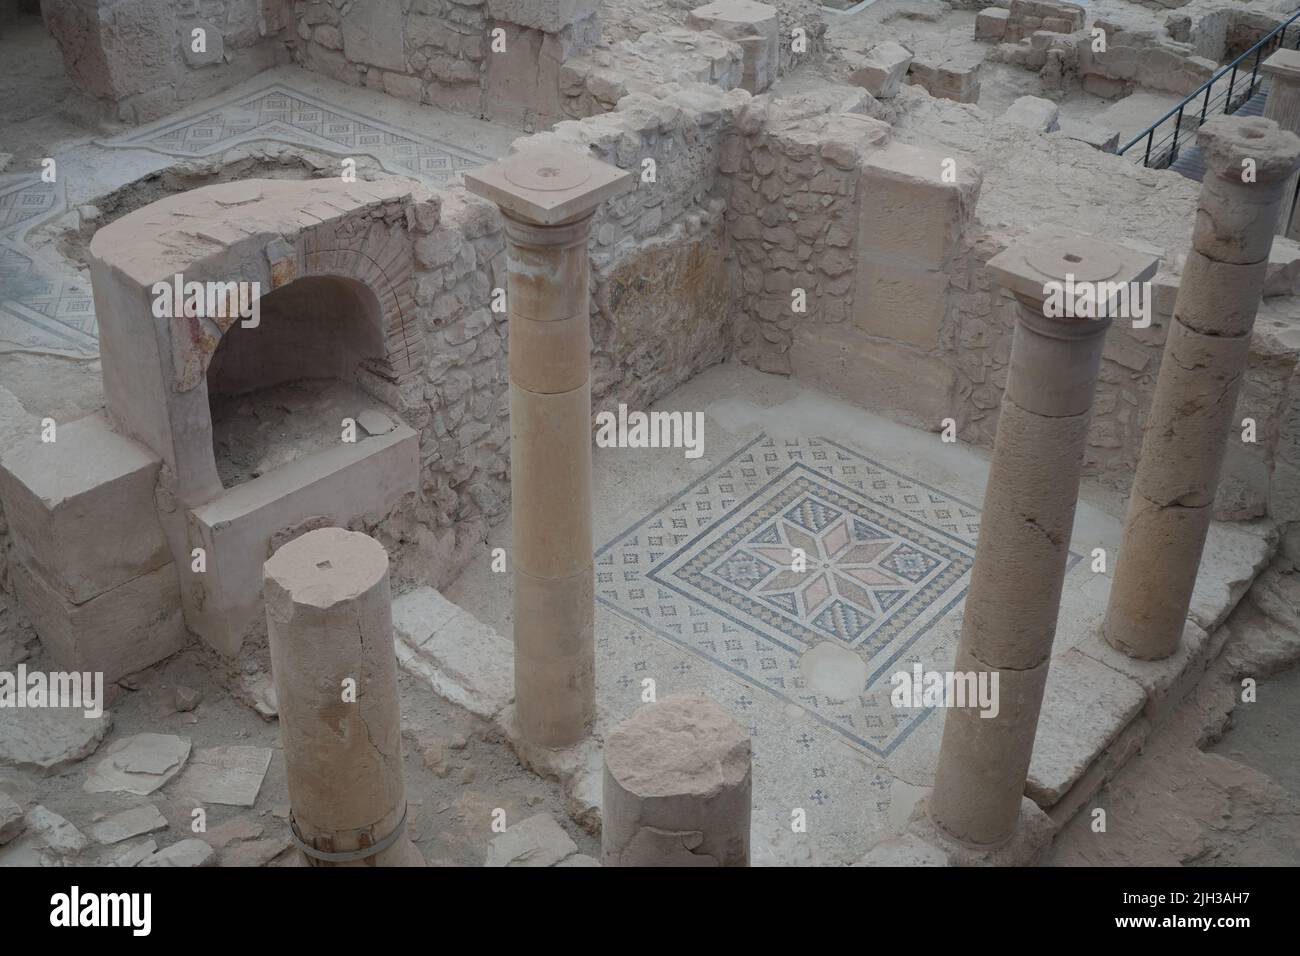 Die Säulen in der Stadt Zeugma, die von den Griechen gegründet und später von den Römern vor dem Eupret fortgesetzt wurden. Weltkulturerbe der Türkei. Stockfoto